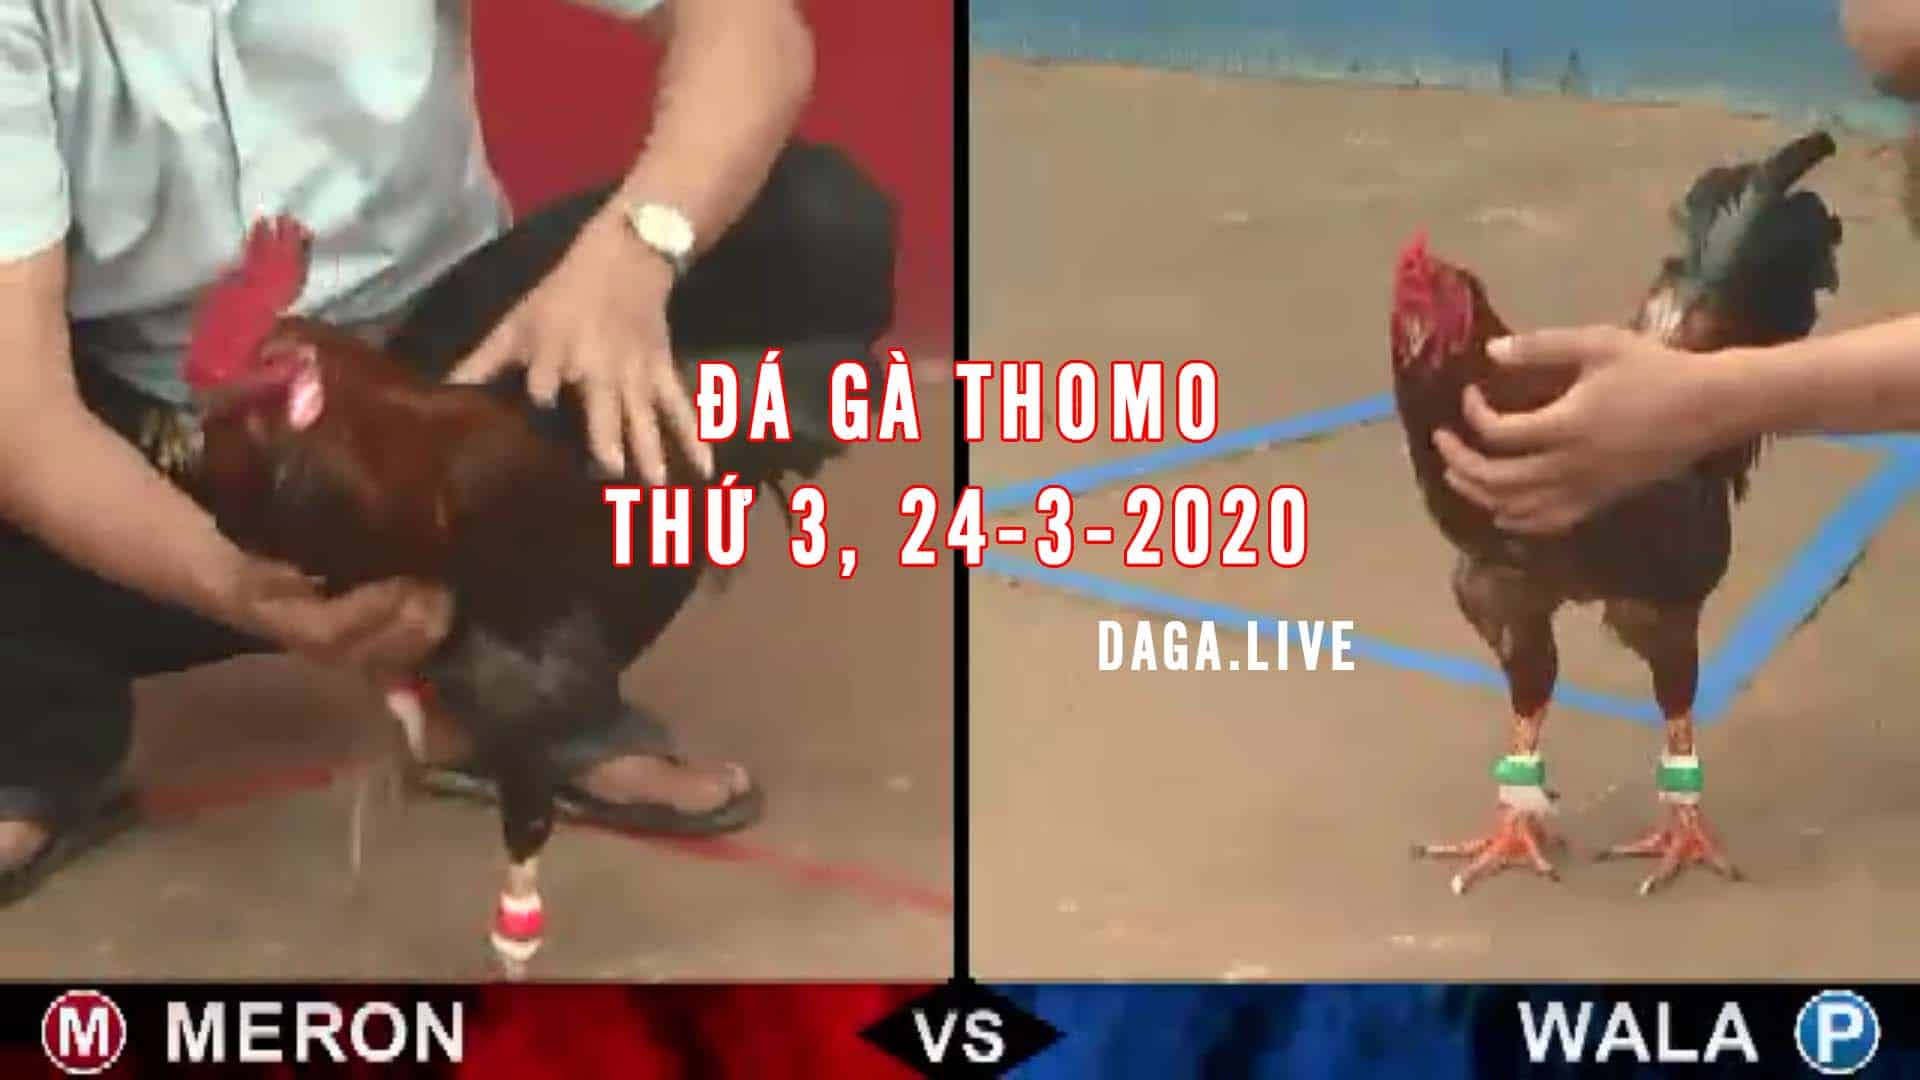 DAGA.LIVE - Đá gà thomo hôm nay, đá gà trực tiếp, đá gà campuchia, đá gà cựa sắt thứ 3 ngày 24-3-2020